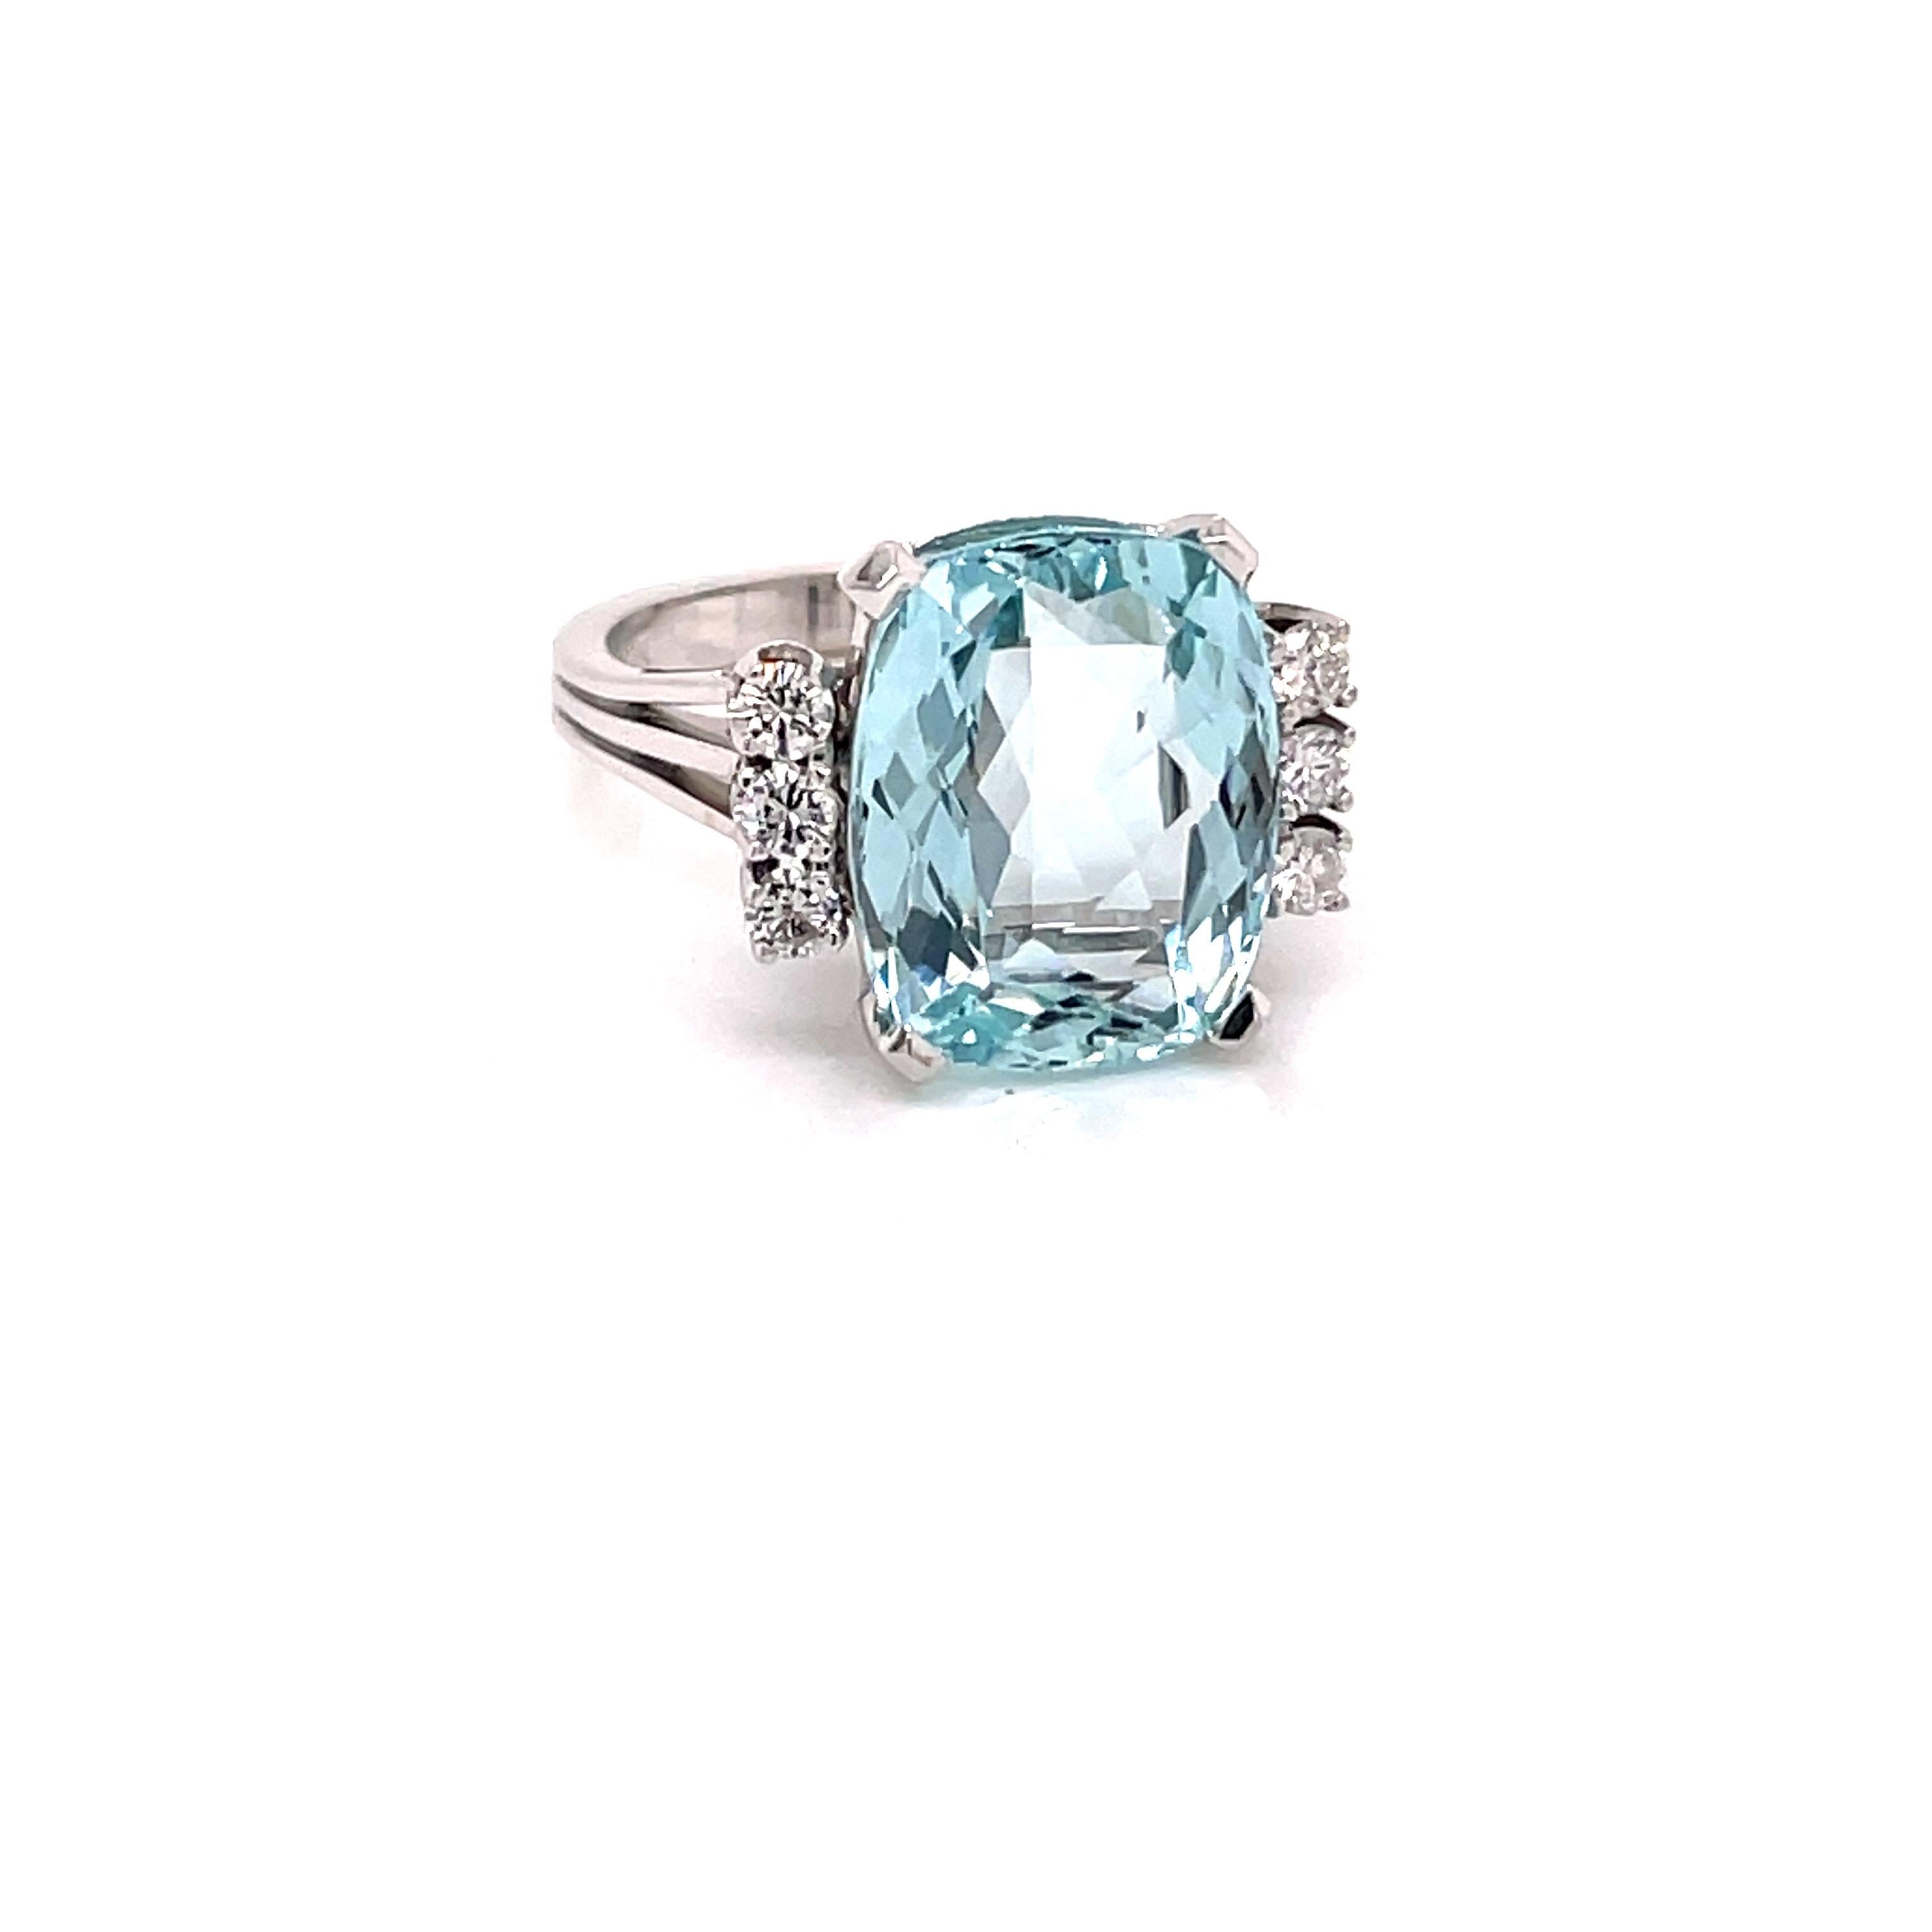 Vintage 1960's 7.35ct Cushion Cut Aquamarine ring with Diamonds - L'aigue-marine pèse environ 7.35ct et mesure 13.7 x 11mm.  Elle est rehaussée de 6 diamants ronds de taille brillant pesant approximativement 0,36ct G -H couleur SI clarté.  La